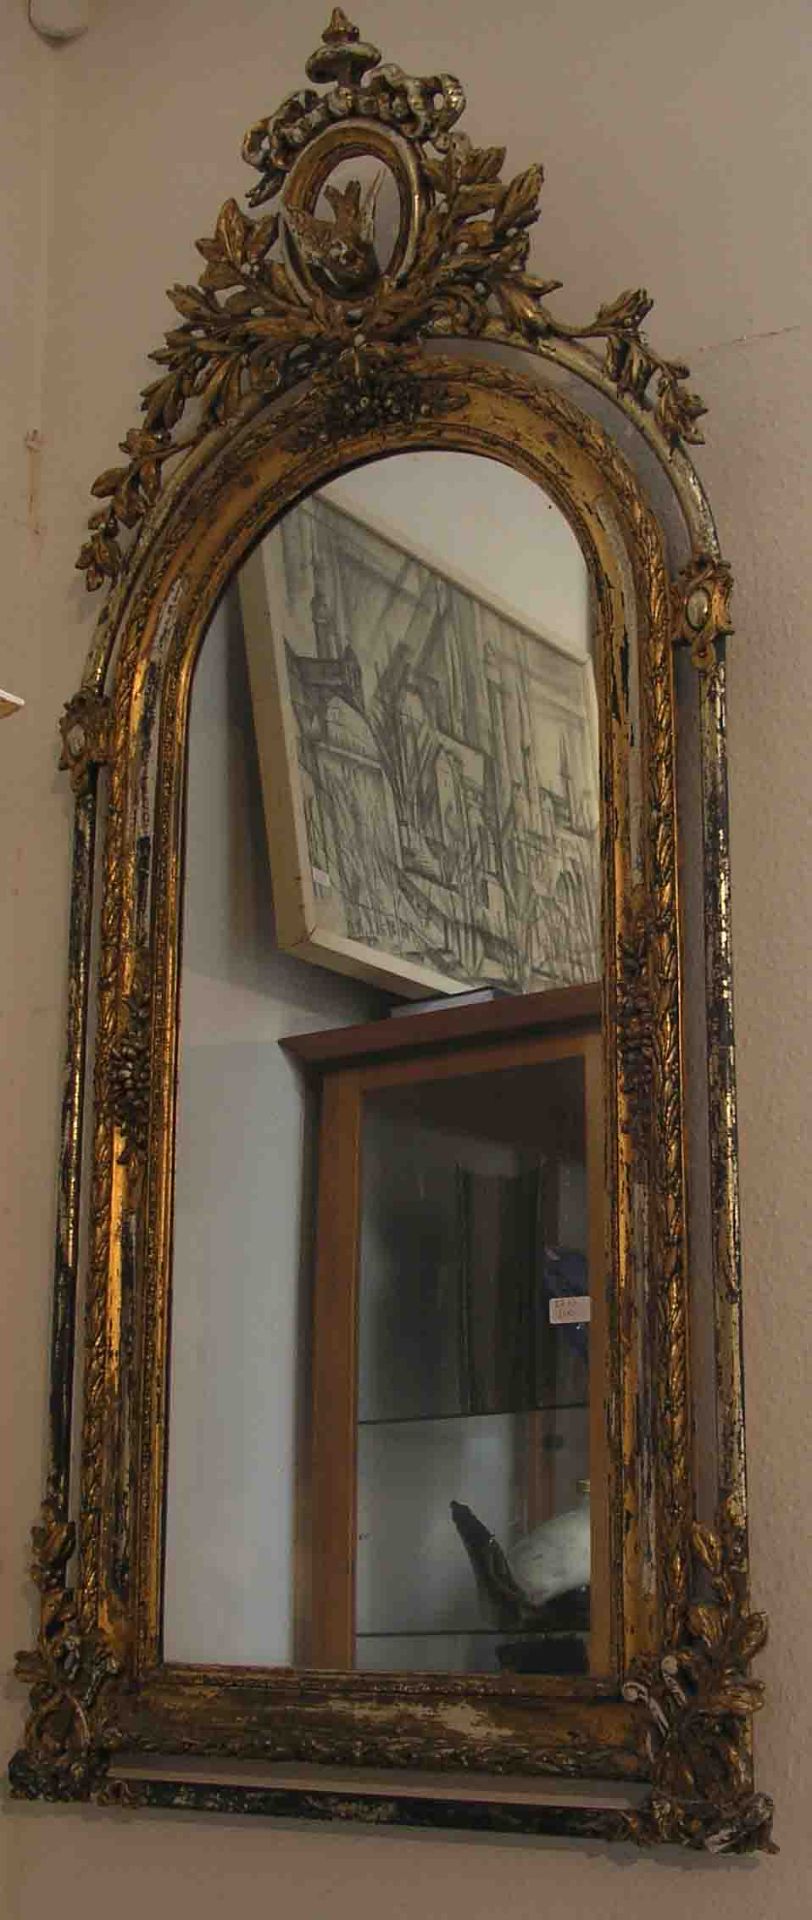 Spiegel mit Konsole. 19. Jh., Holz geschnitzt, zum Teil gefasst. Aufsatz mit Vogel- und